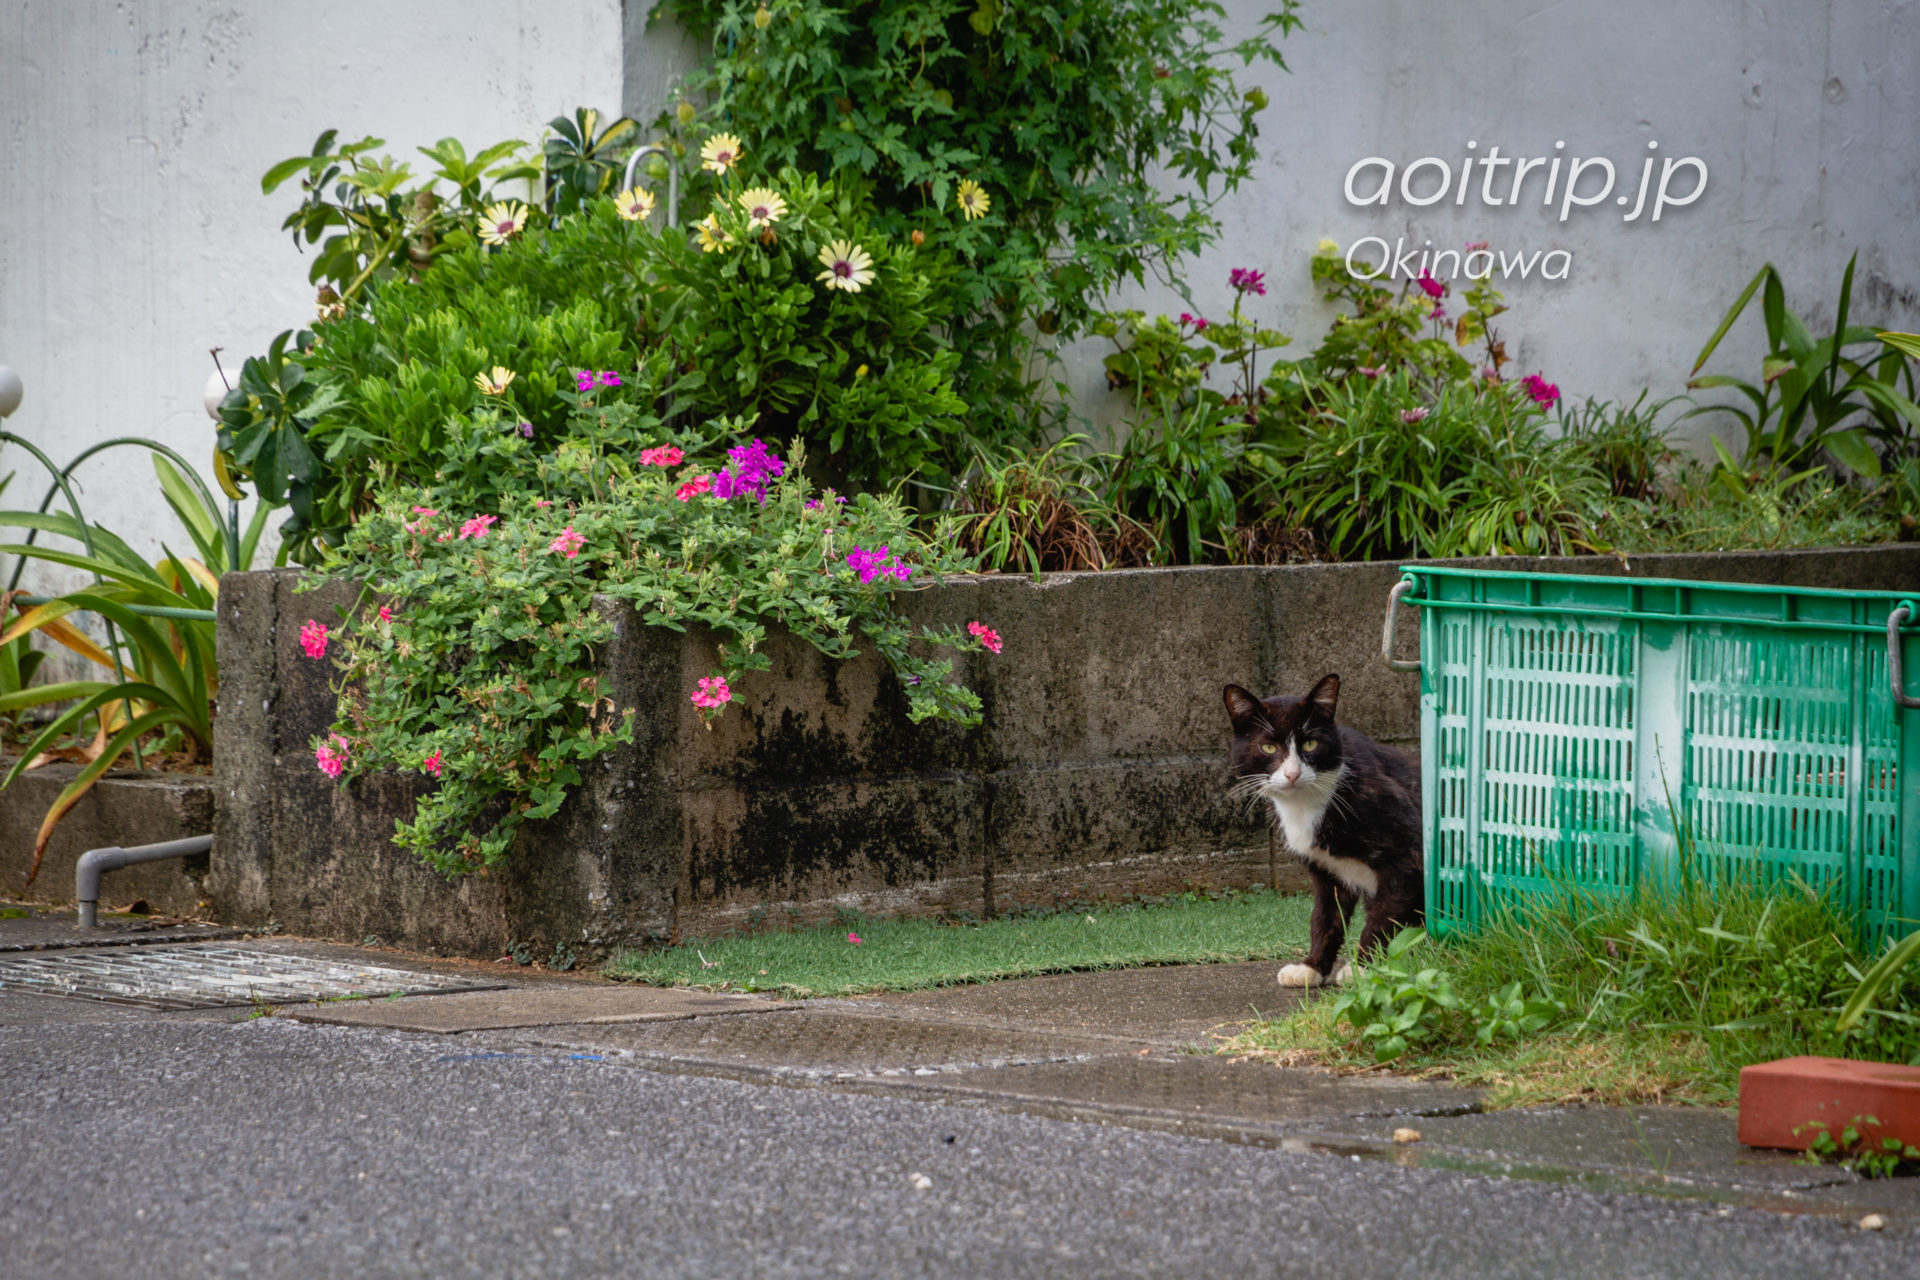 岩合さんの頭の上に乗った猫に会いたくて、沖縄県本部町